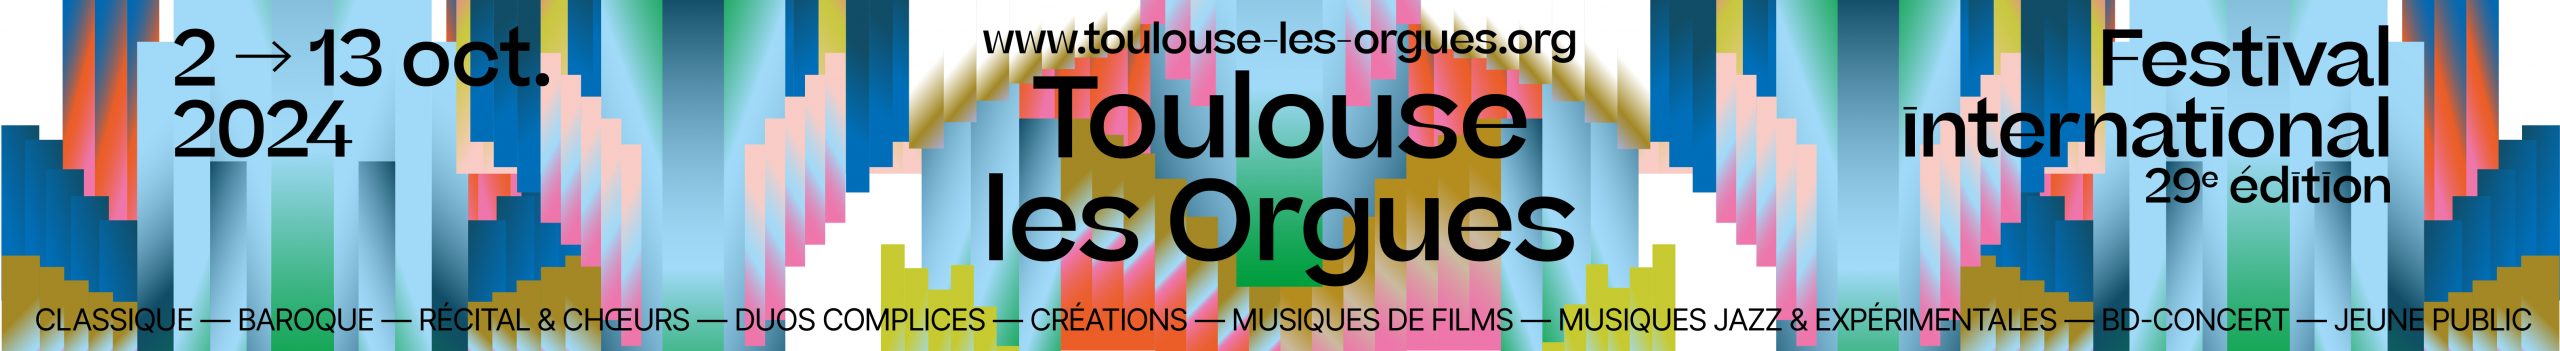 Toulouse Les Orgues Site 2024